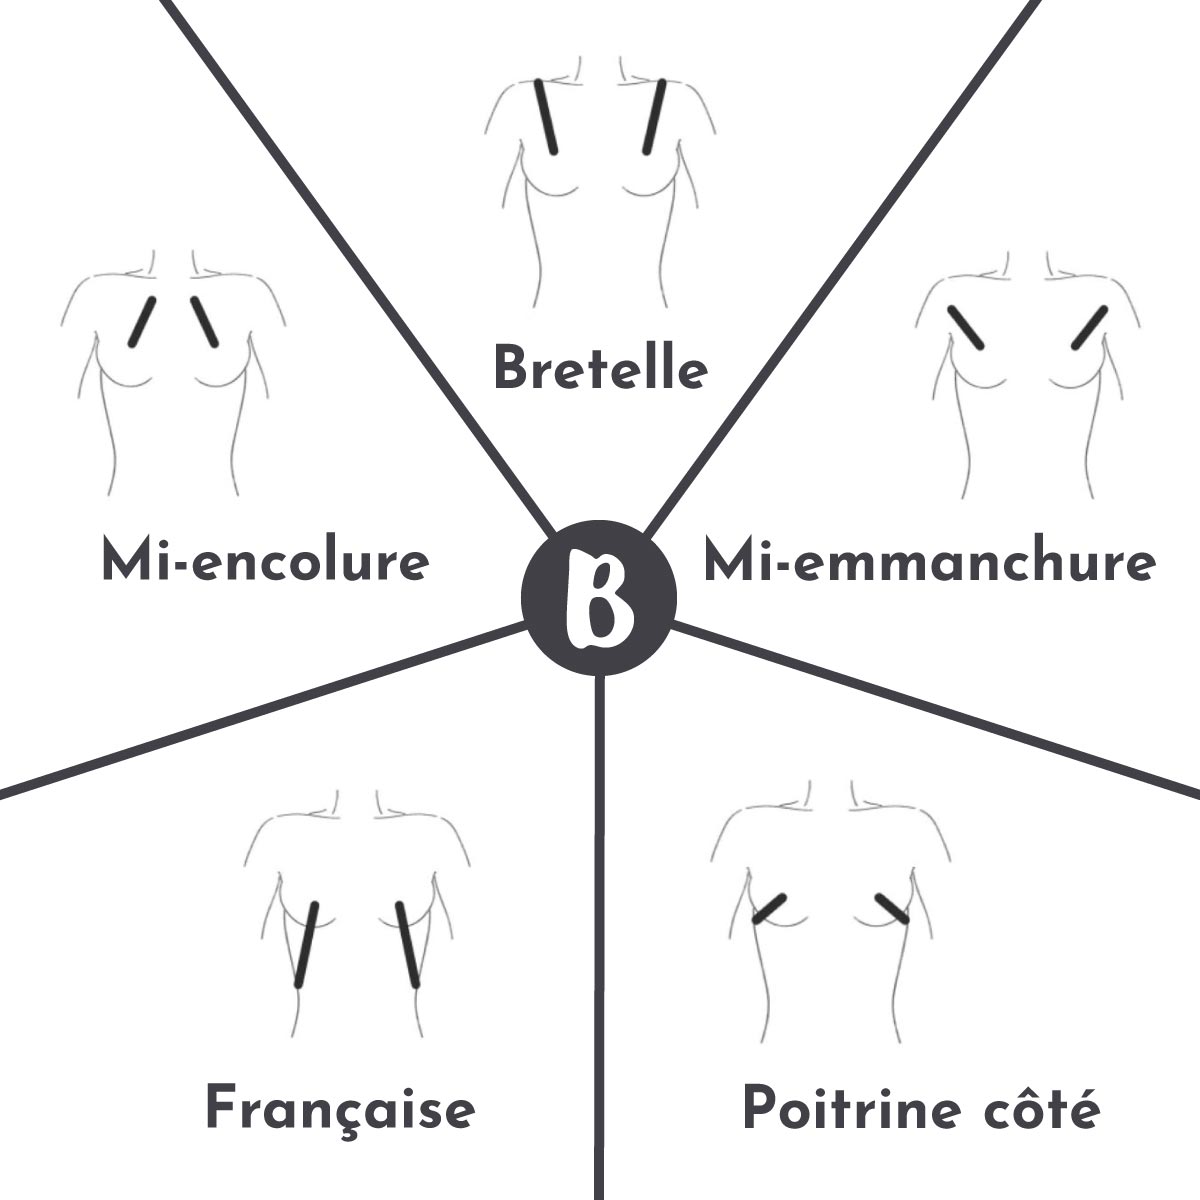 5 des 6 types de pinces poitrine disponibles dans le créateur de Barapatron